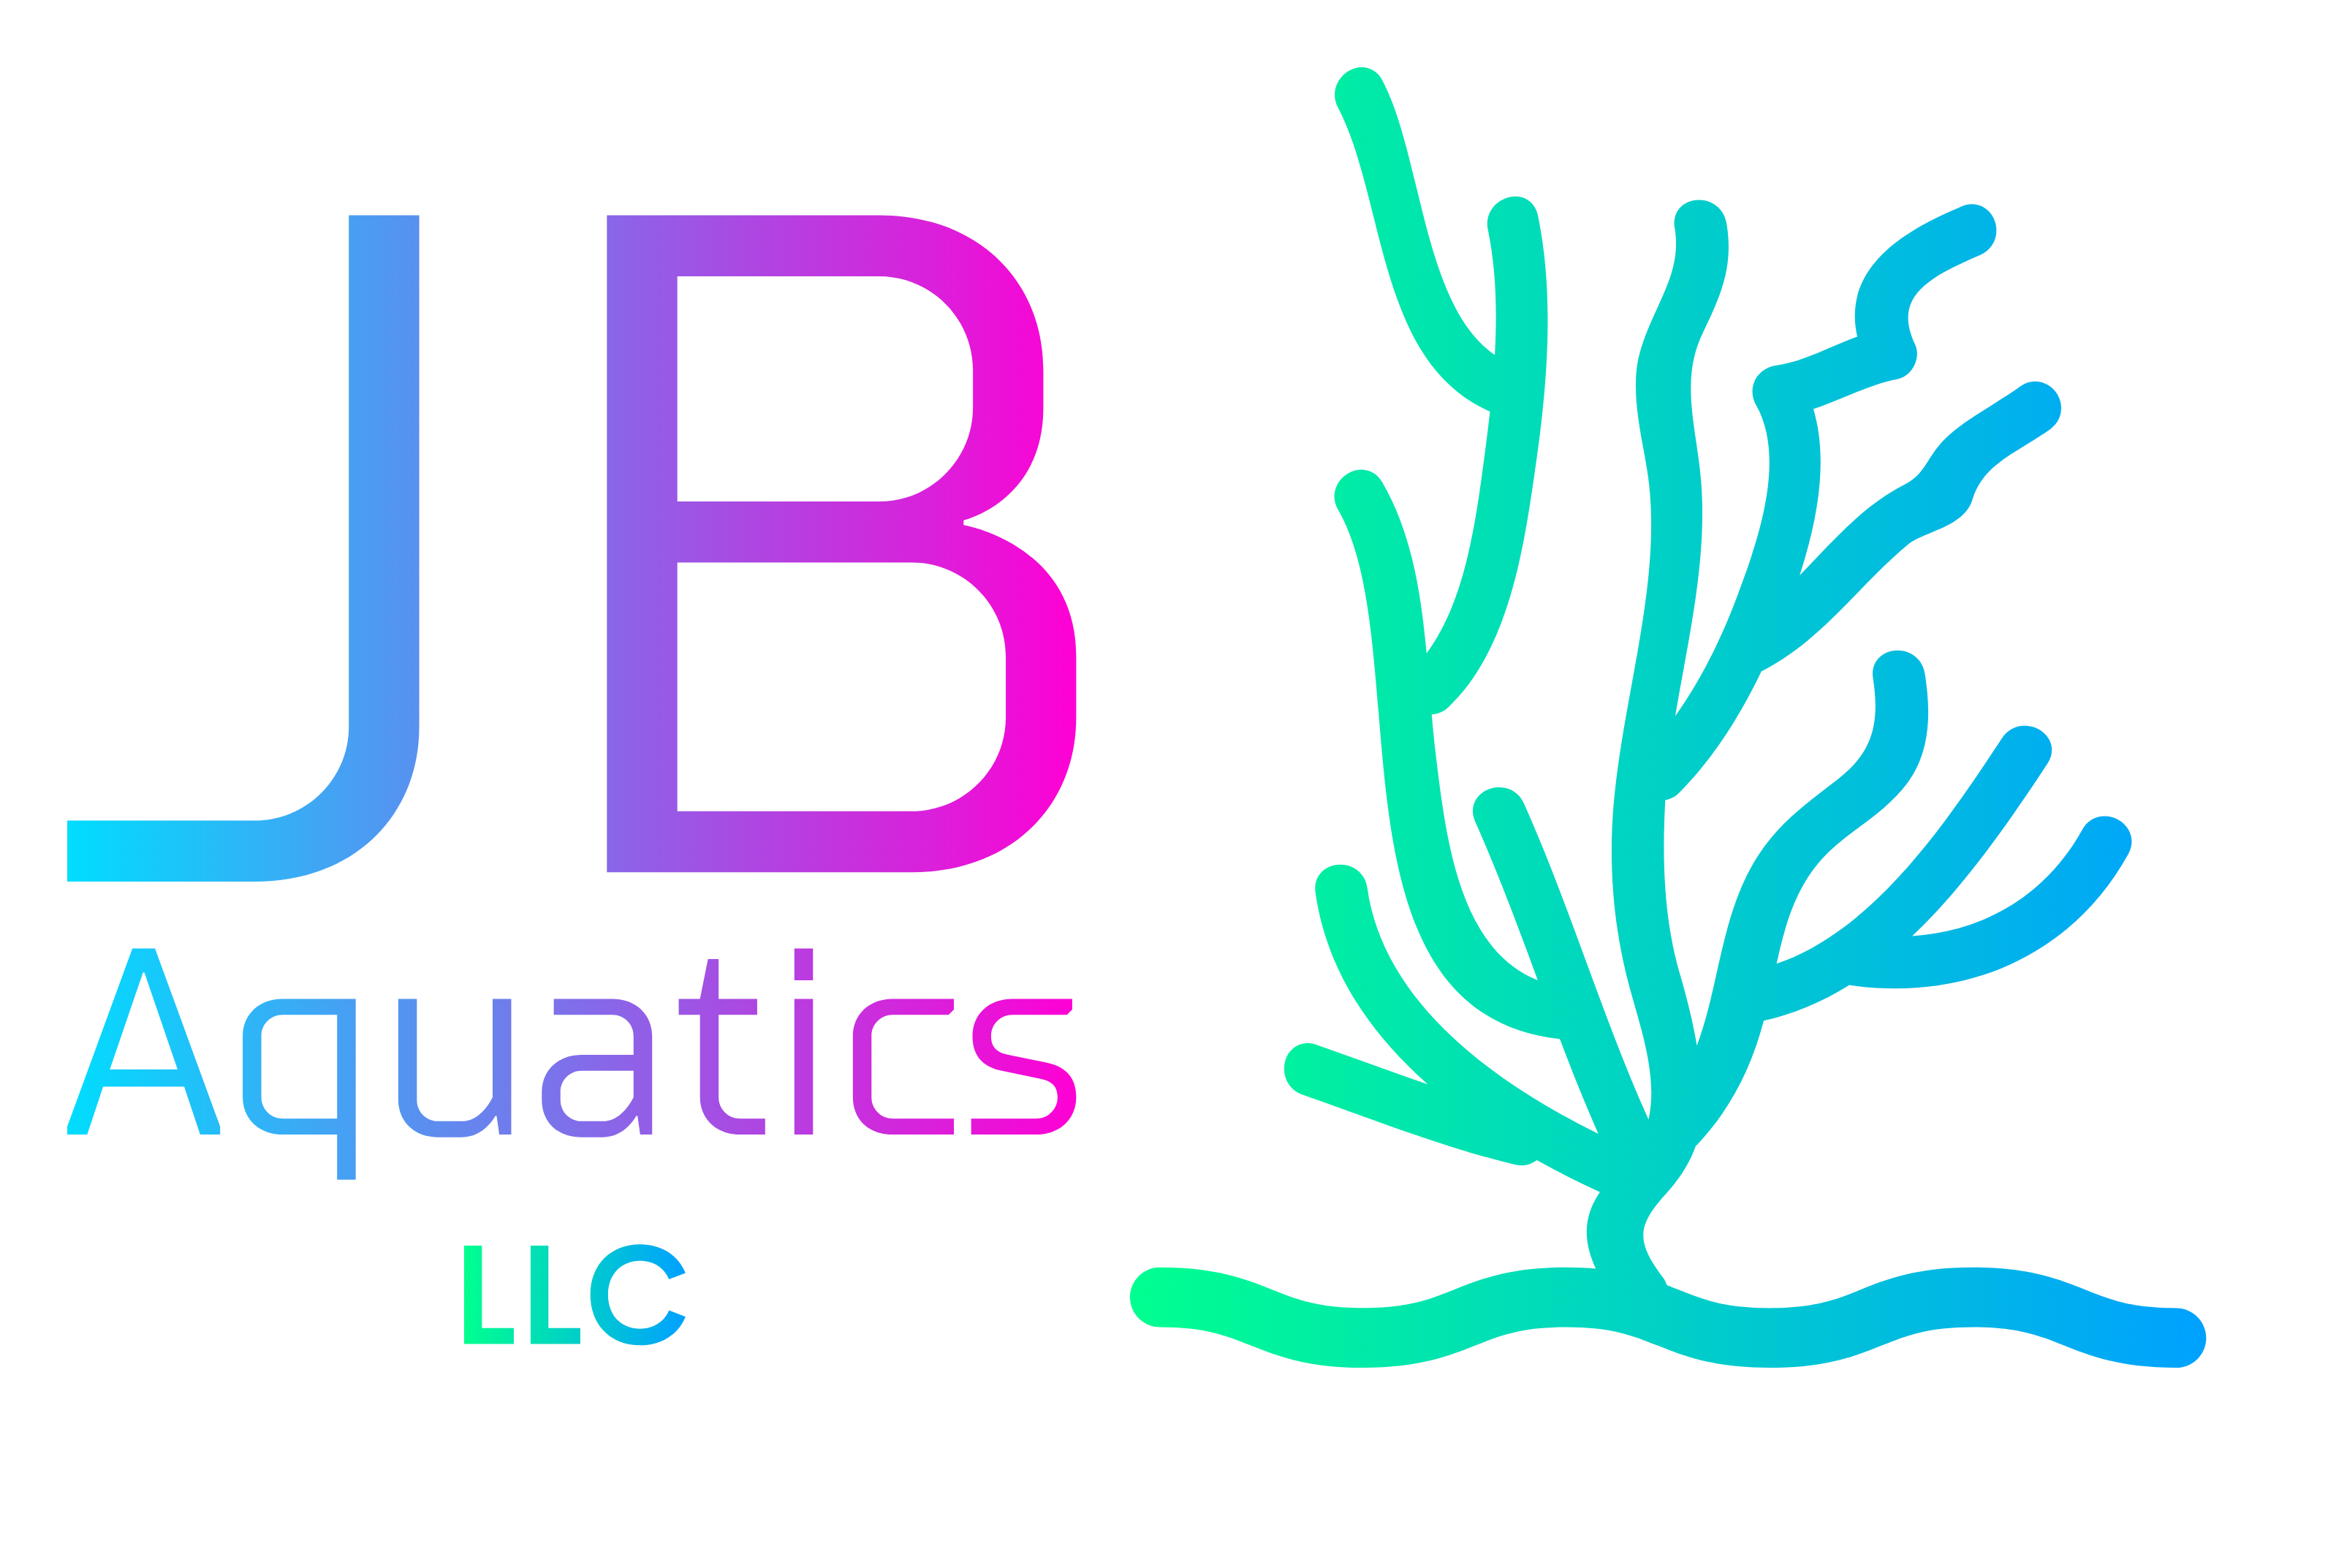 JB Aquatics LLC